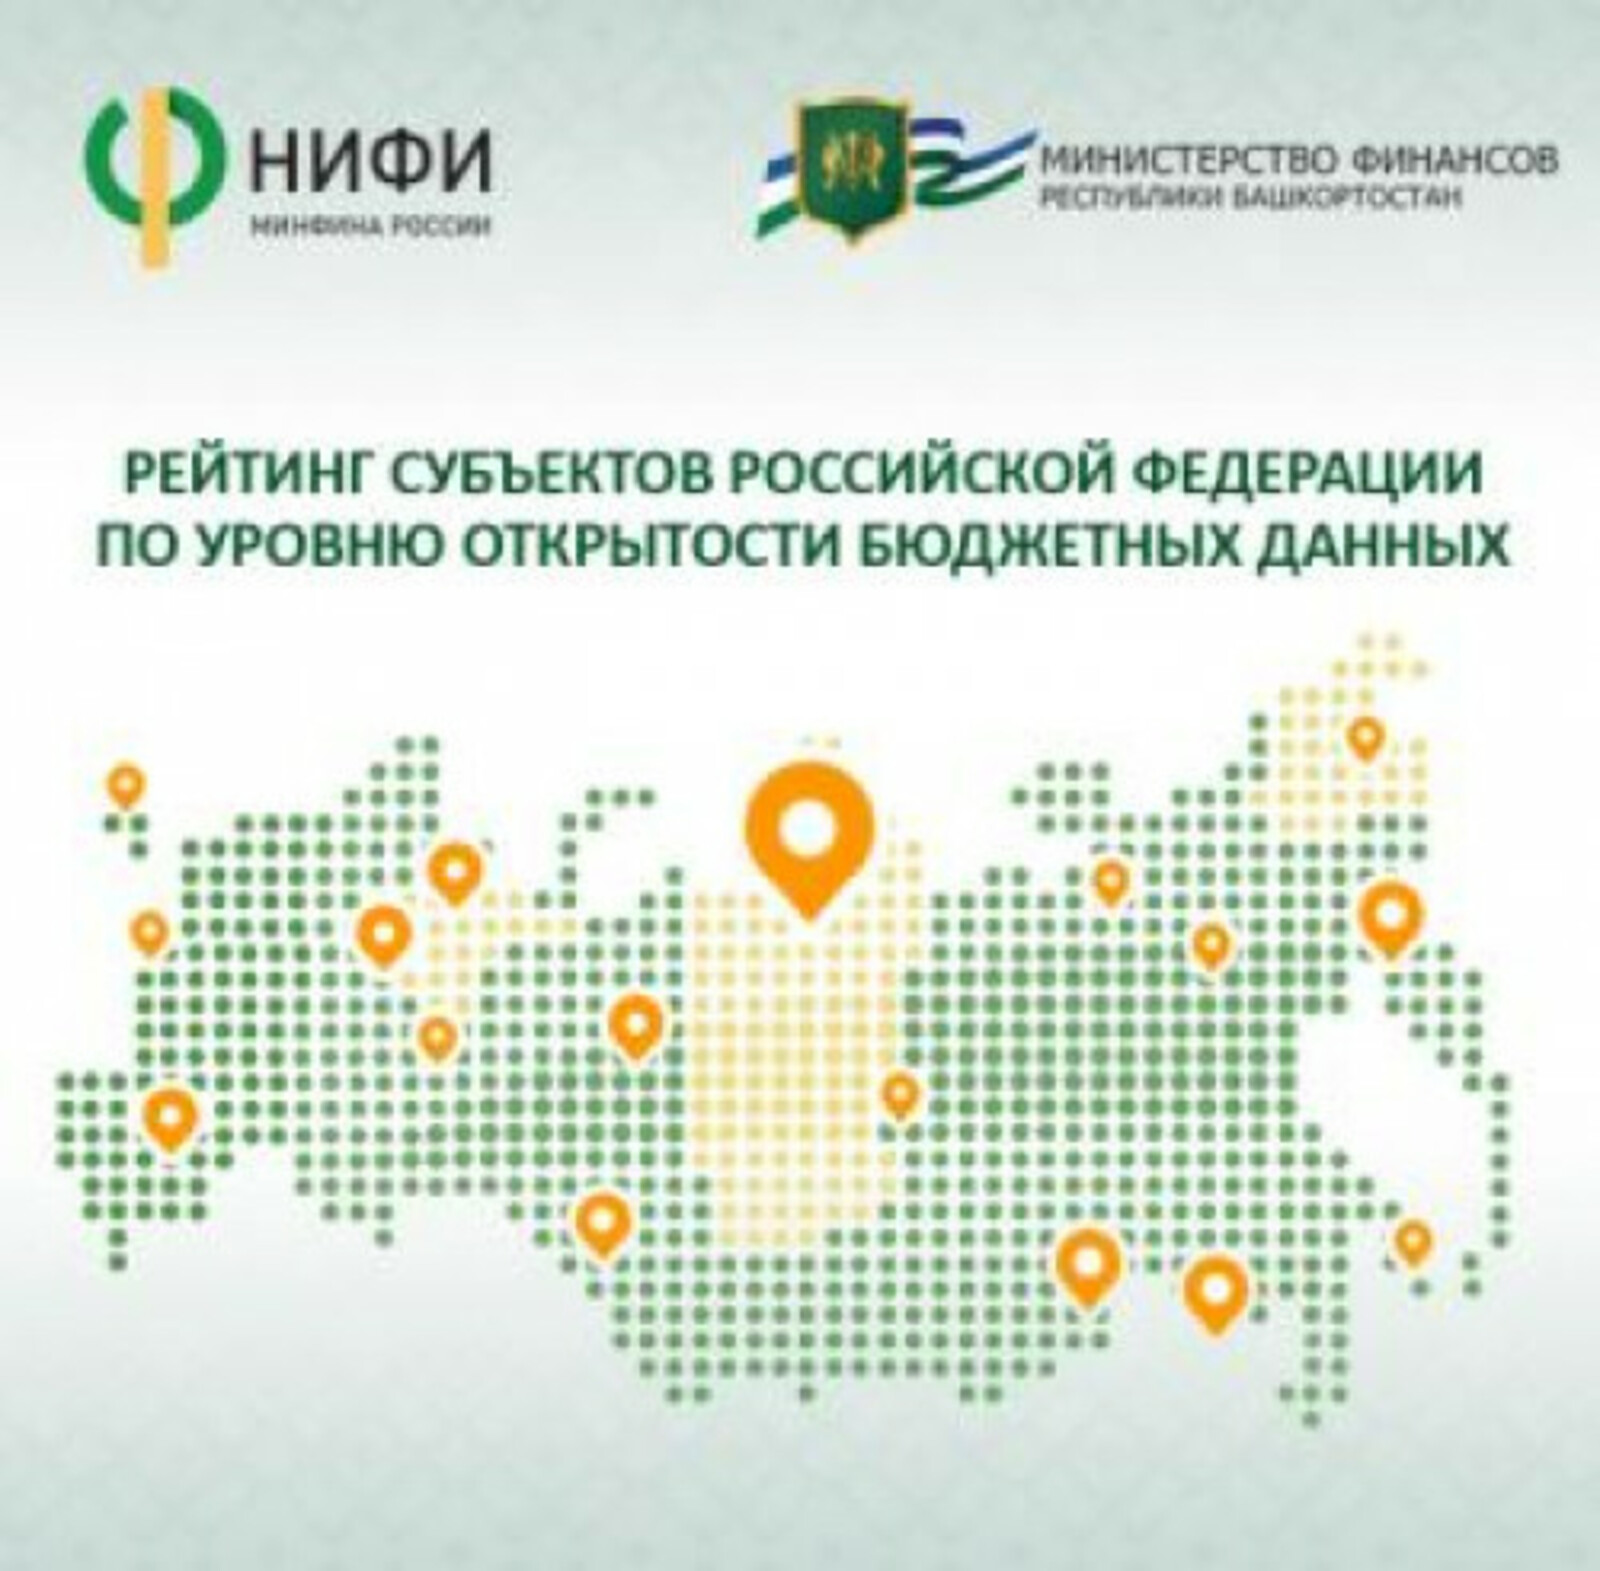 пресс-служба правительства РБ Башкирия вошла в топ регионов по уровню открытости бюджетных данных